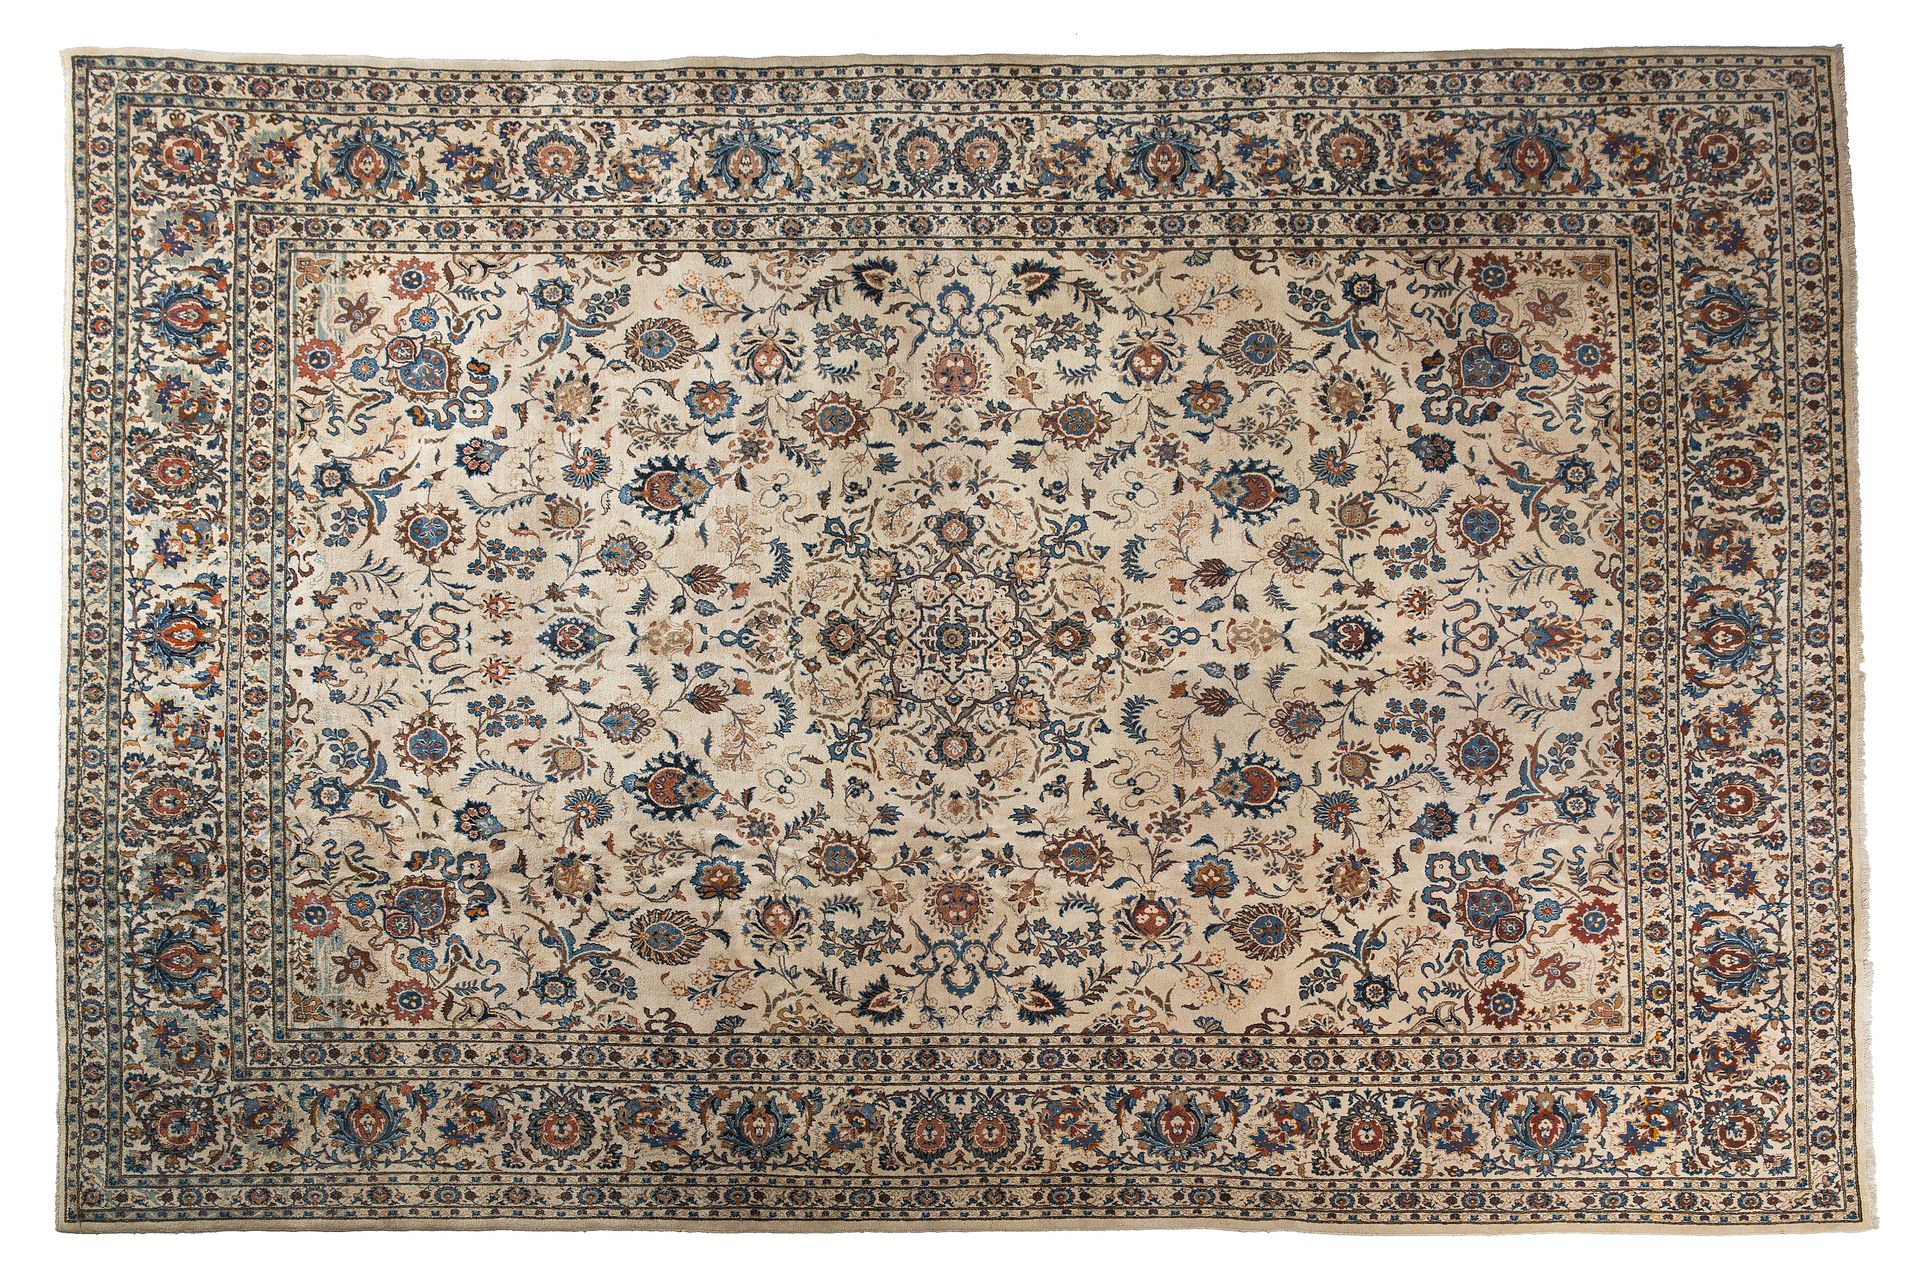 Null Importante tappeto KACHAN (Iran), metà del XX secolo

Un campo avorio, deco&hellip;